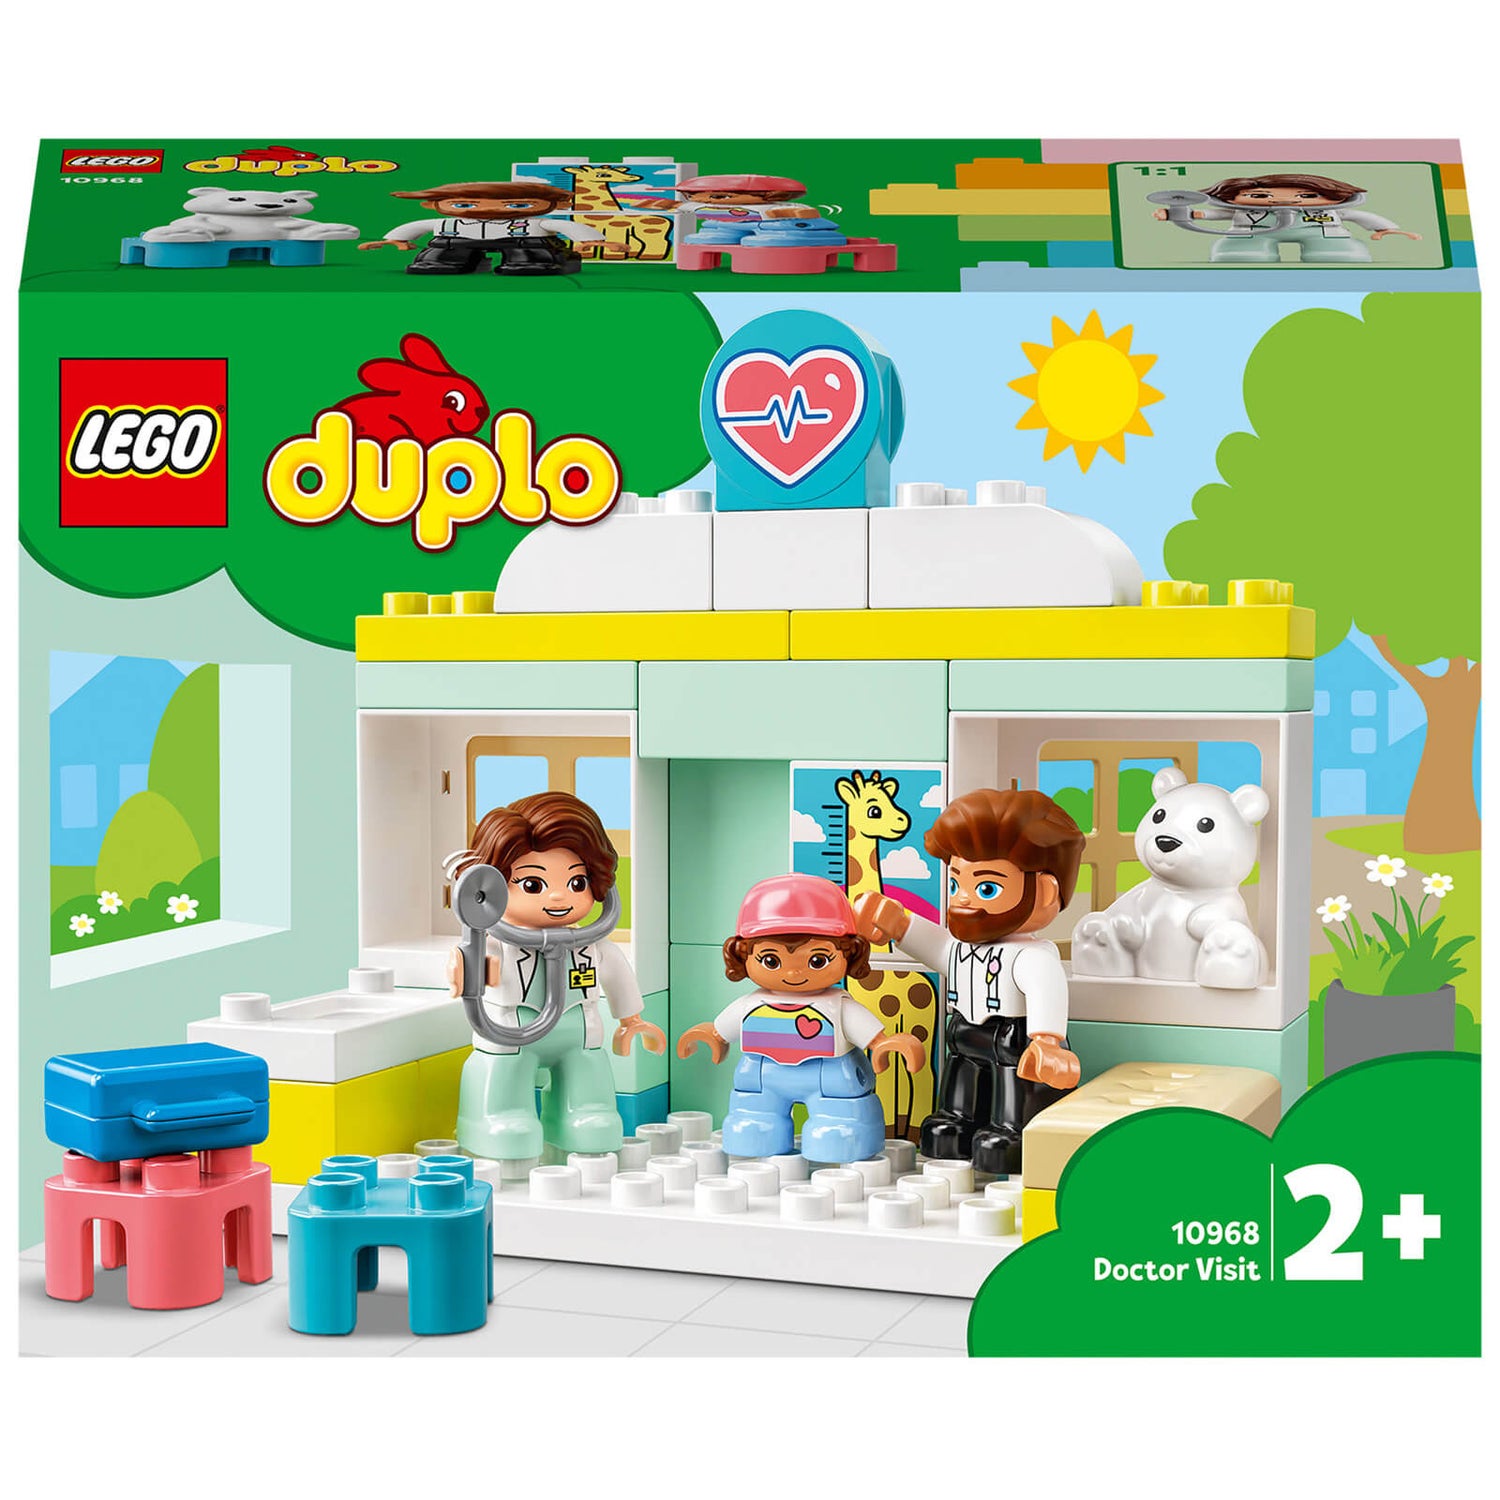 LEGO DUPLO Doctor Visit Large Bricks Building Set (10968)